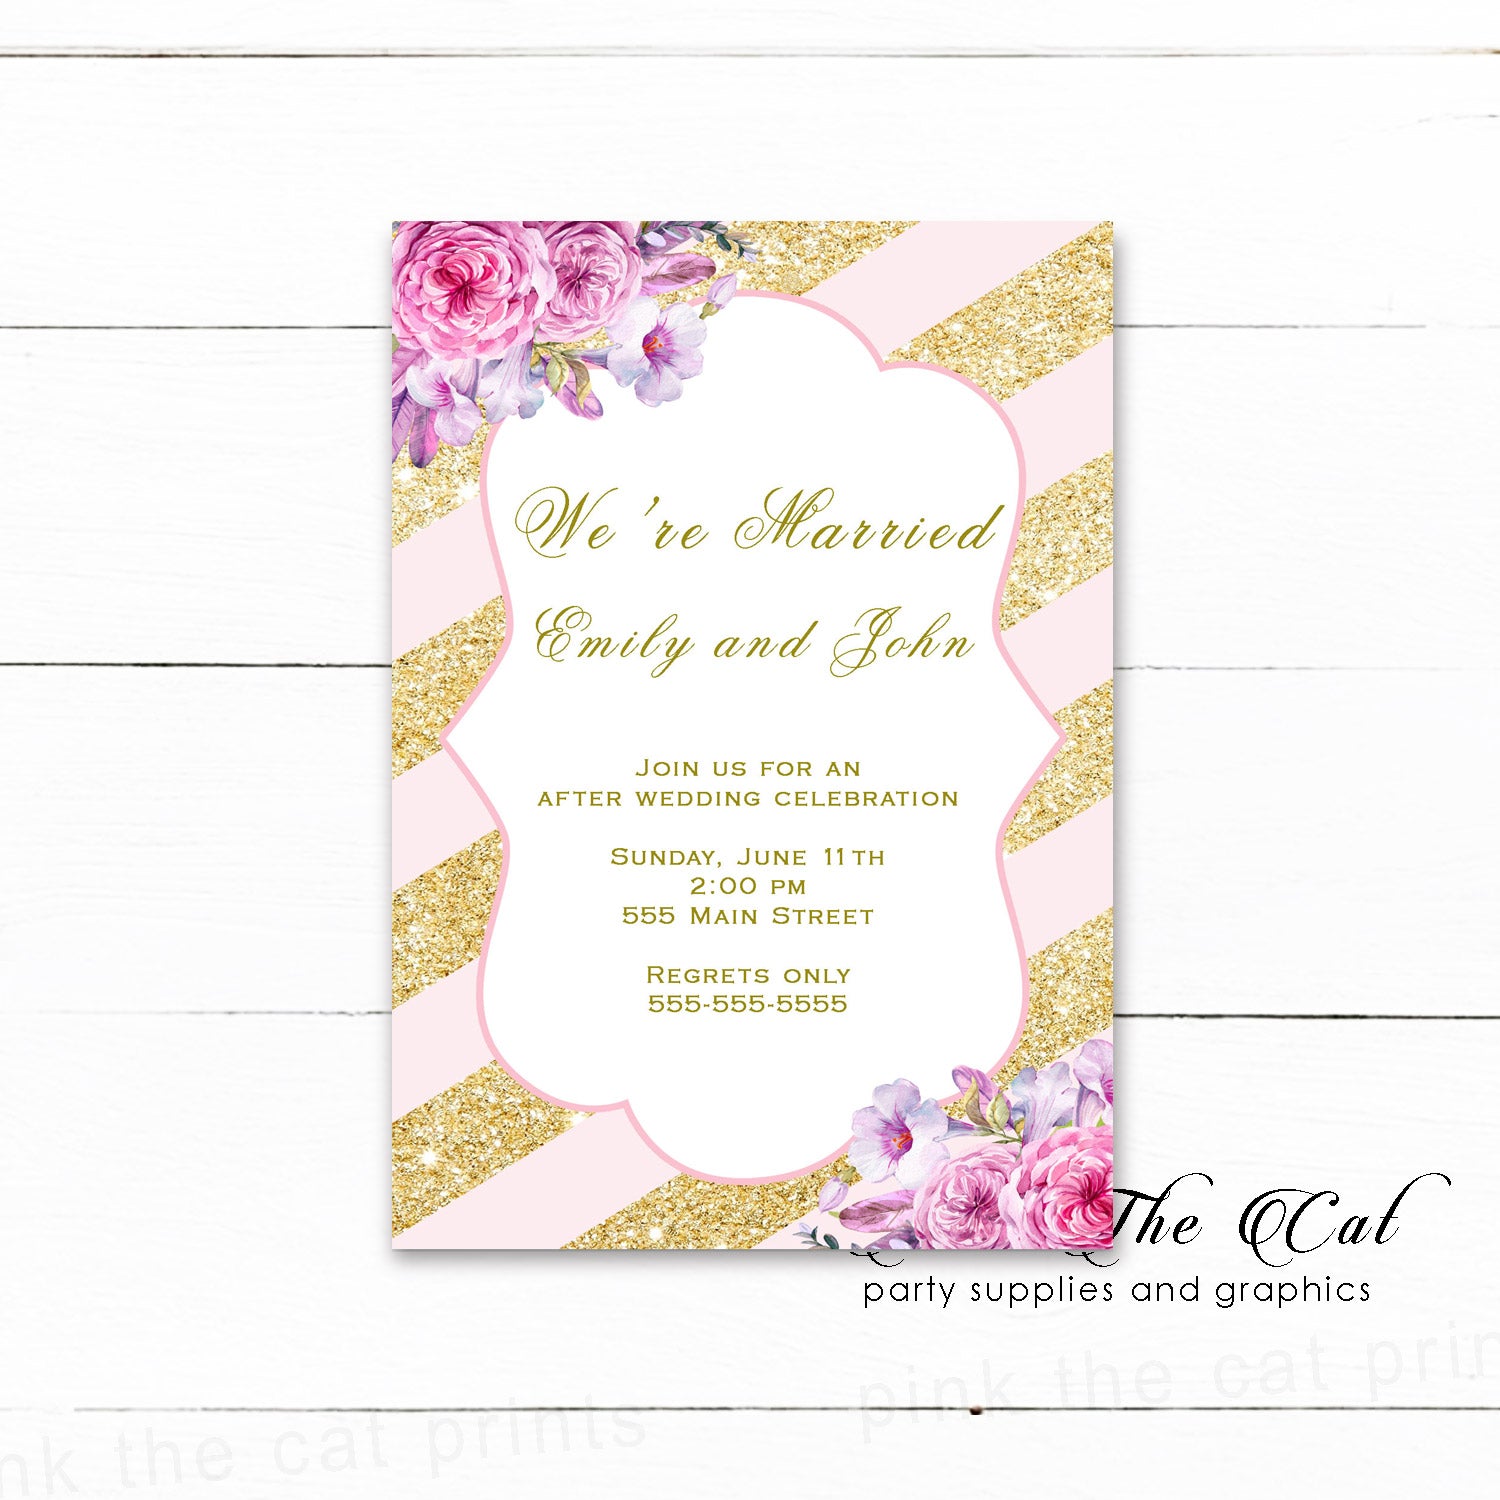 After wedding celebration invitations bush pink gold floral printable